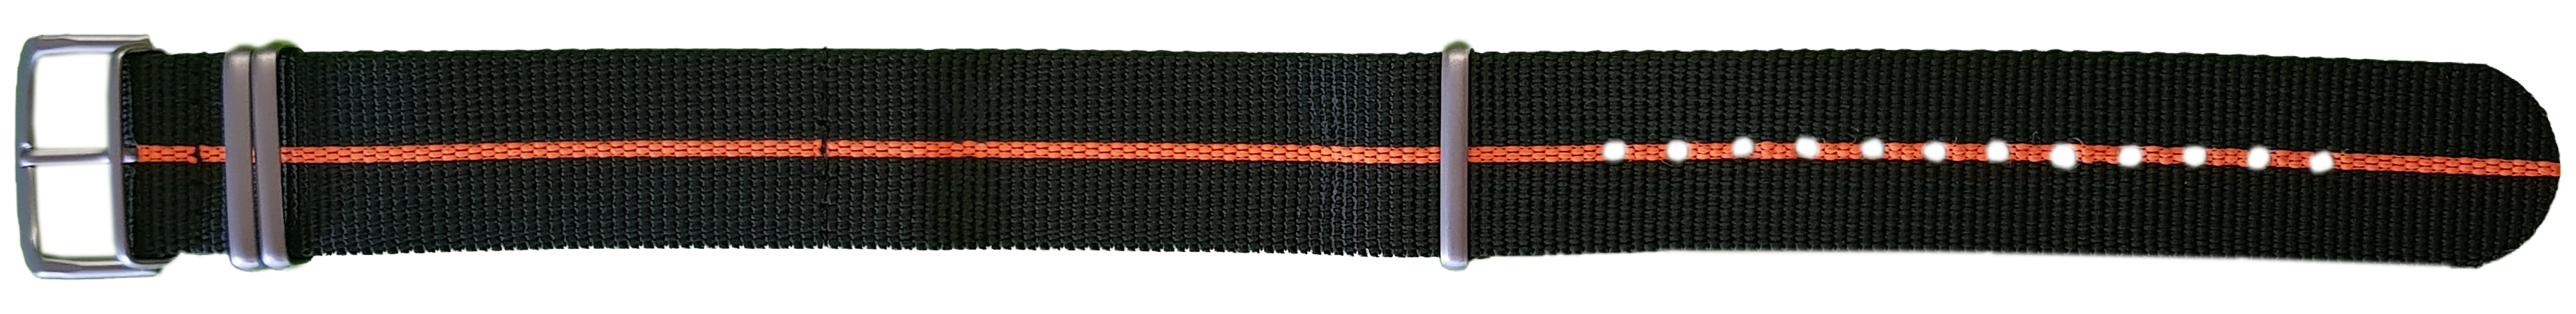 107419 traser® 22mm Textile Strap Black/Orange